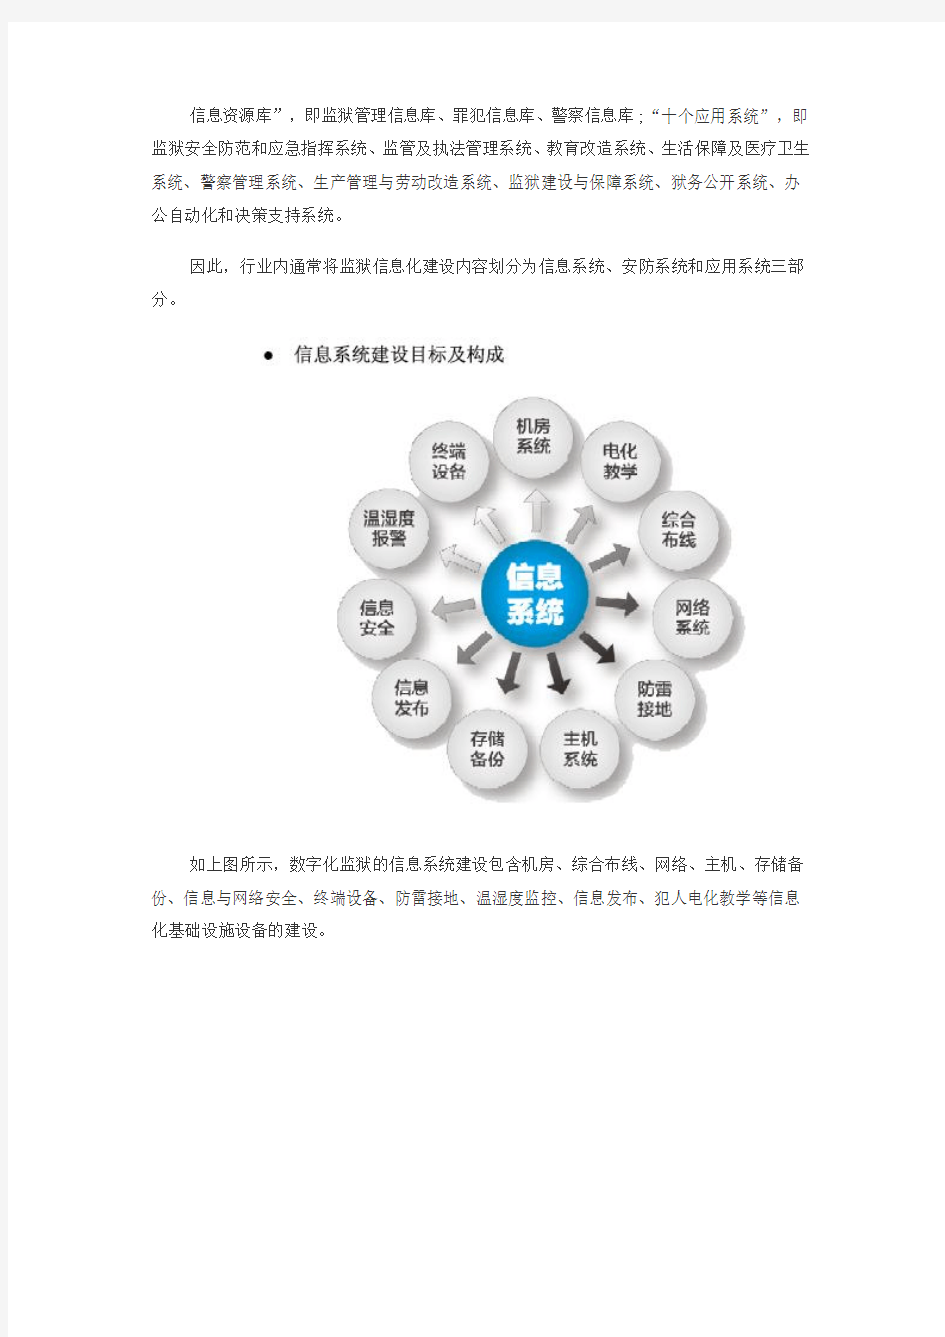 中国监狱信息化建设的方向和目标